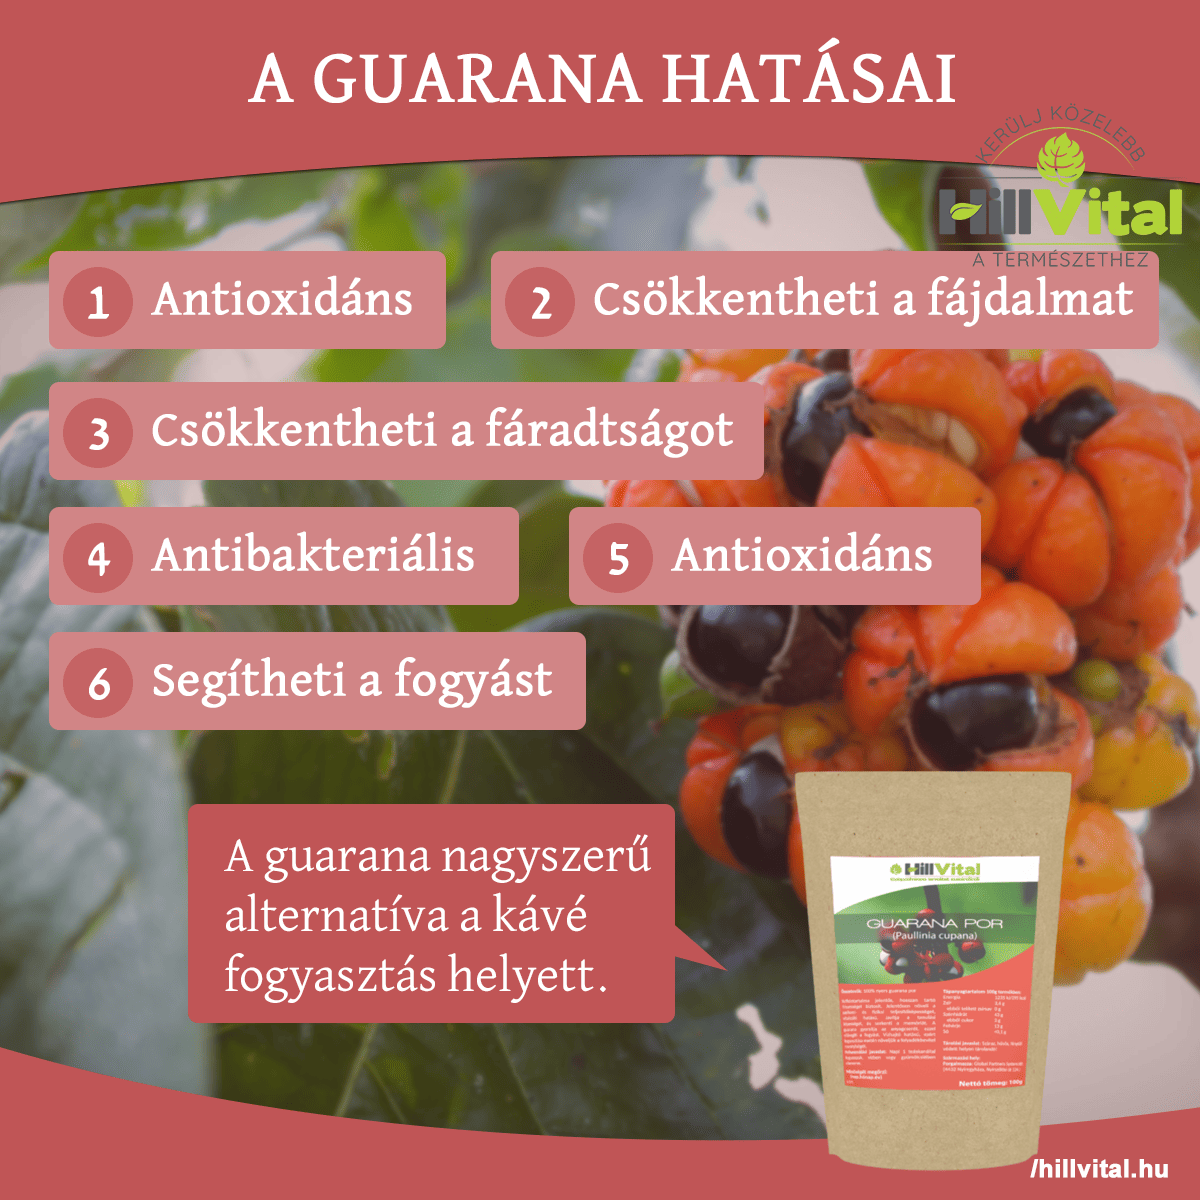 A guarana az egyik legjobb kávépótló